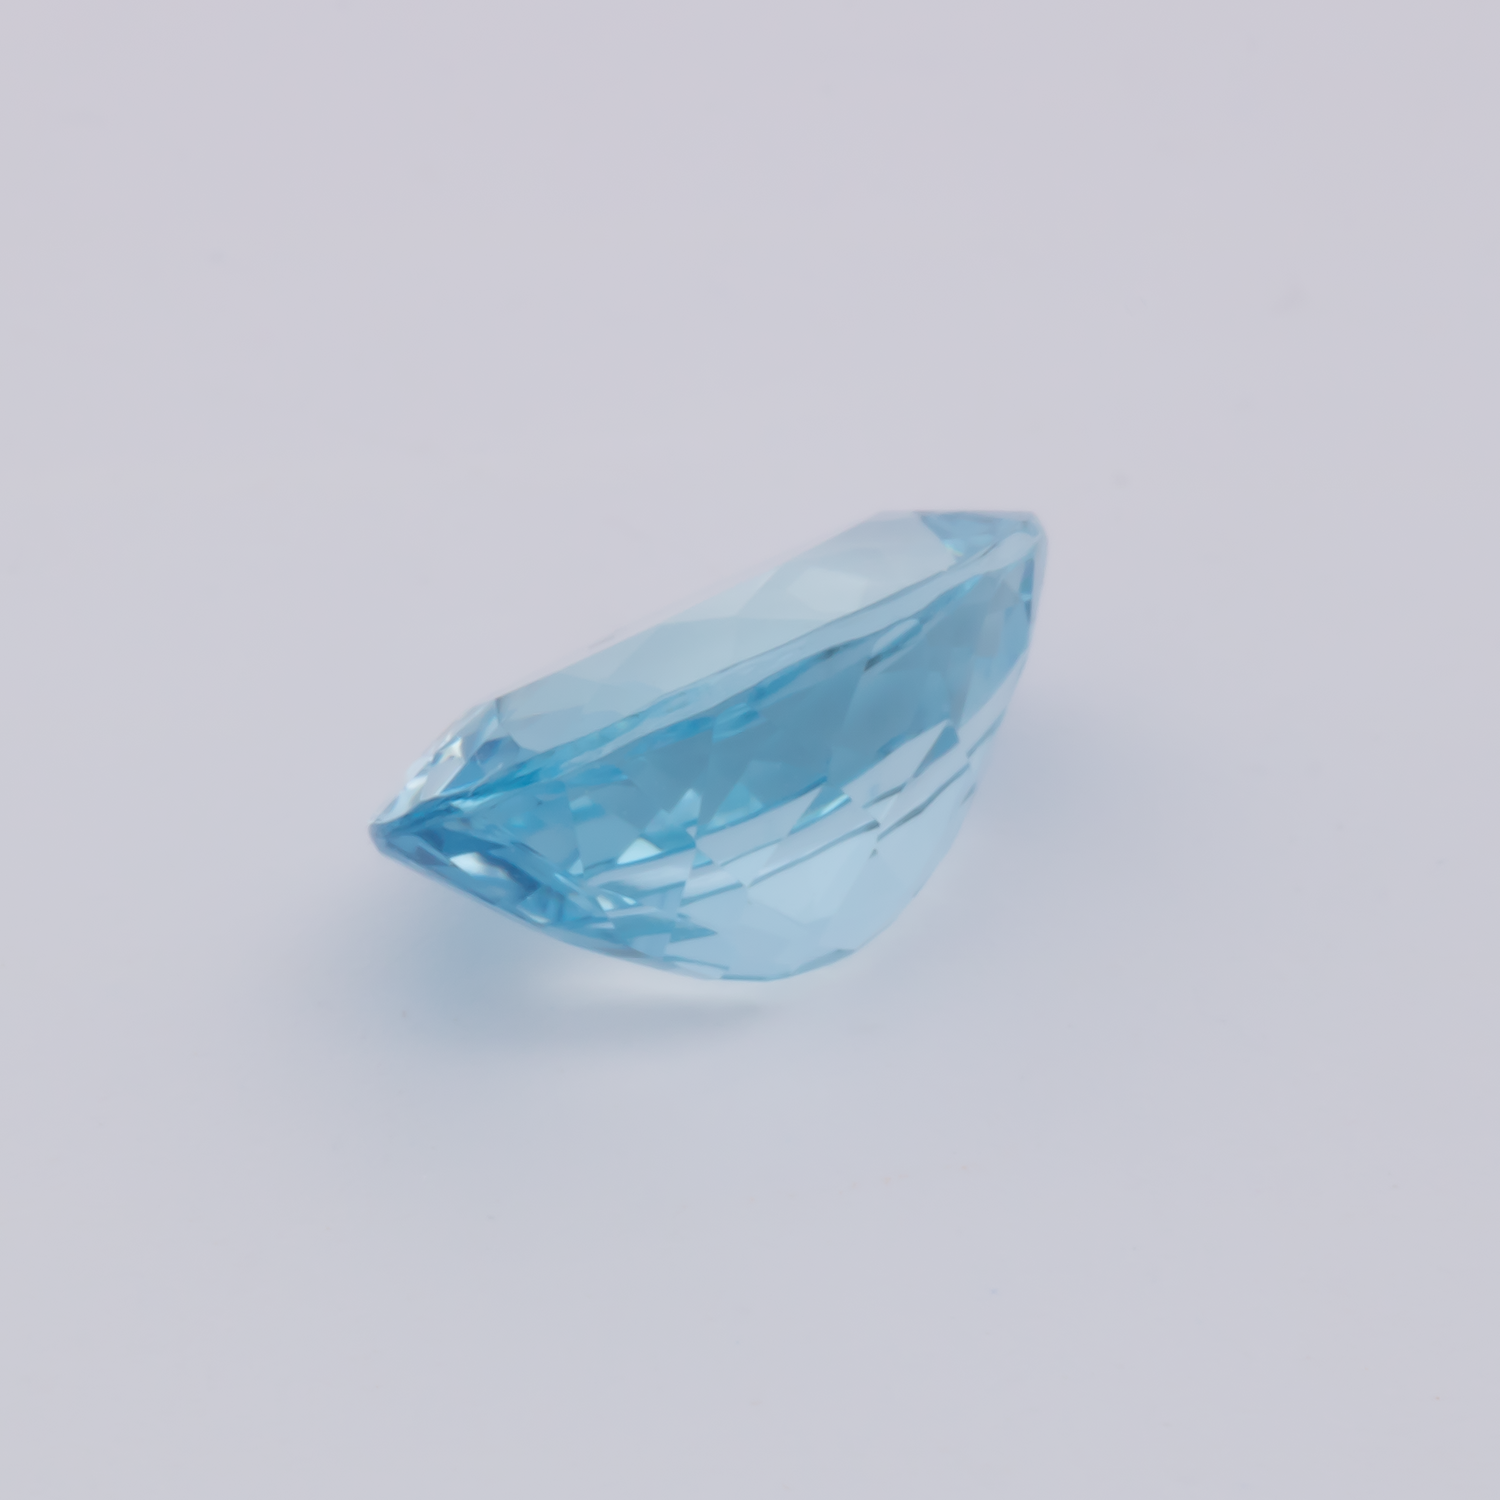 Aquamarin AAA - blau, oval, 9x6.6 mm, 1.45 cts, Nr. A99084